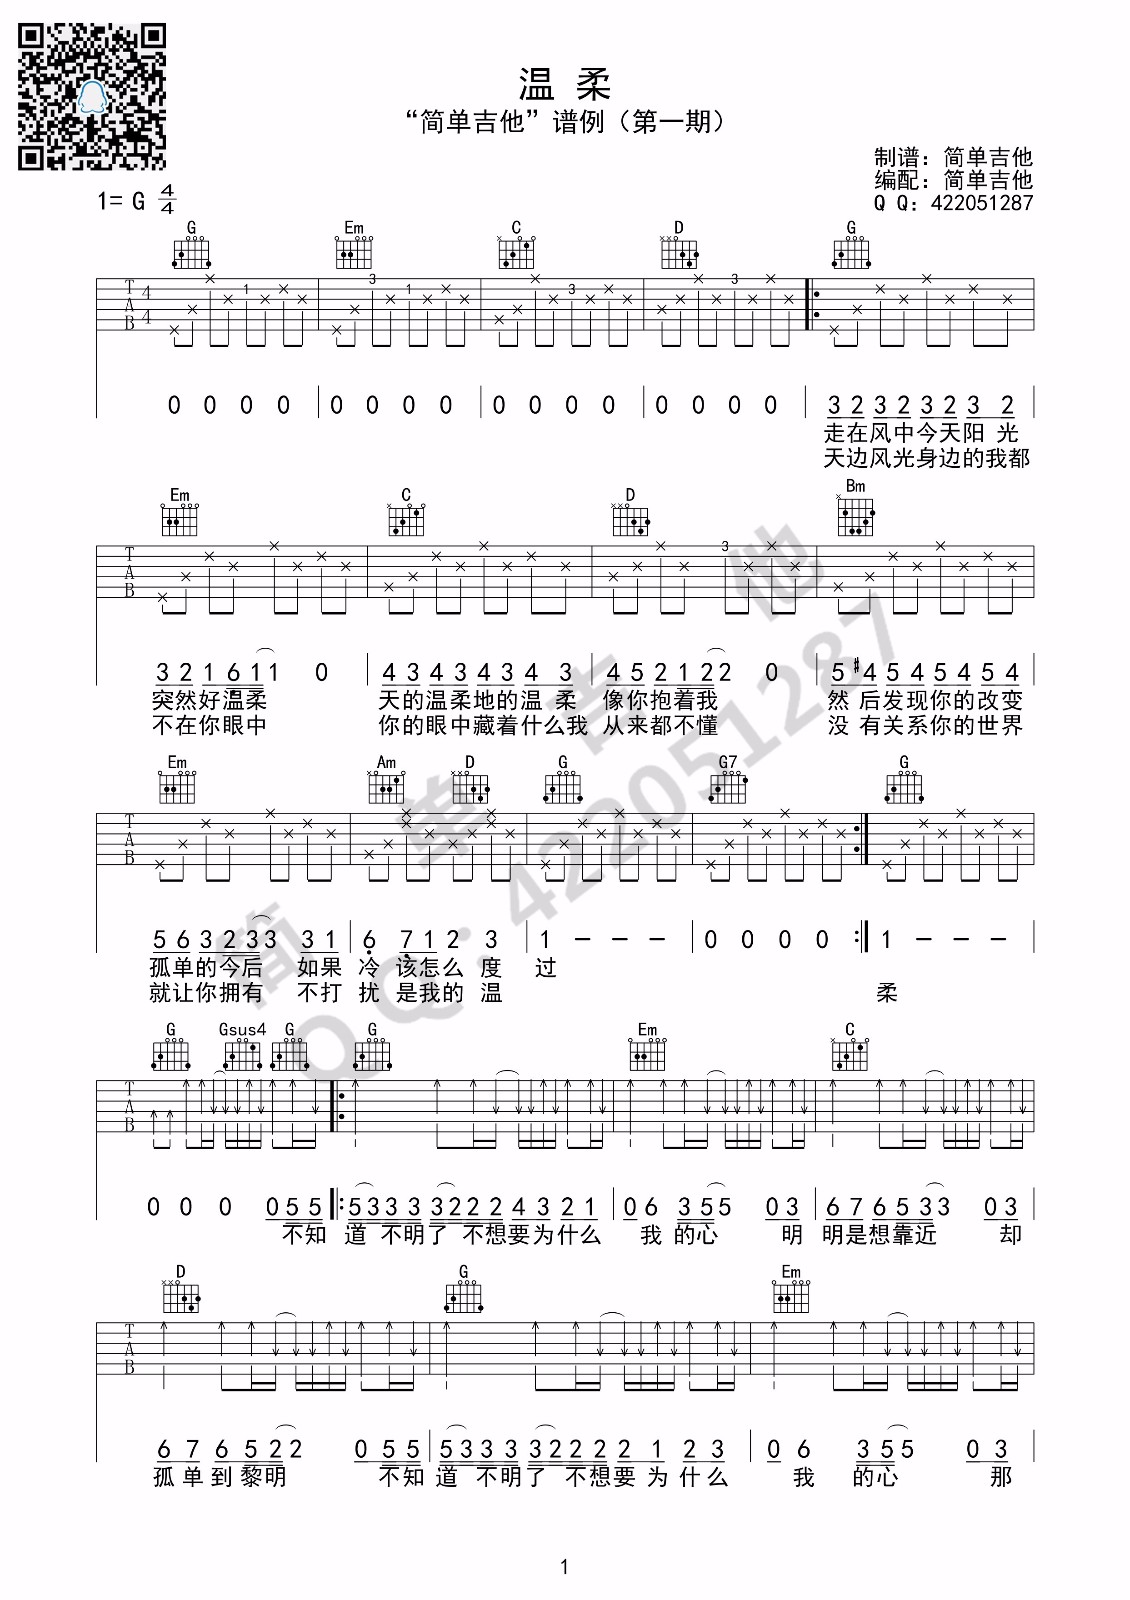 《水星记》吉他谱初级简单版酷音小伟吉他教学_吉他谱_搜谱网